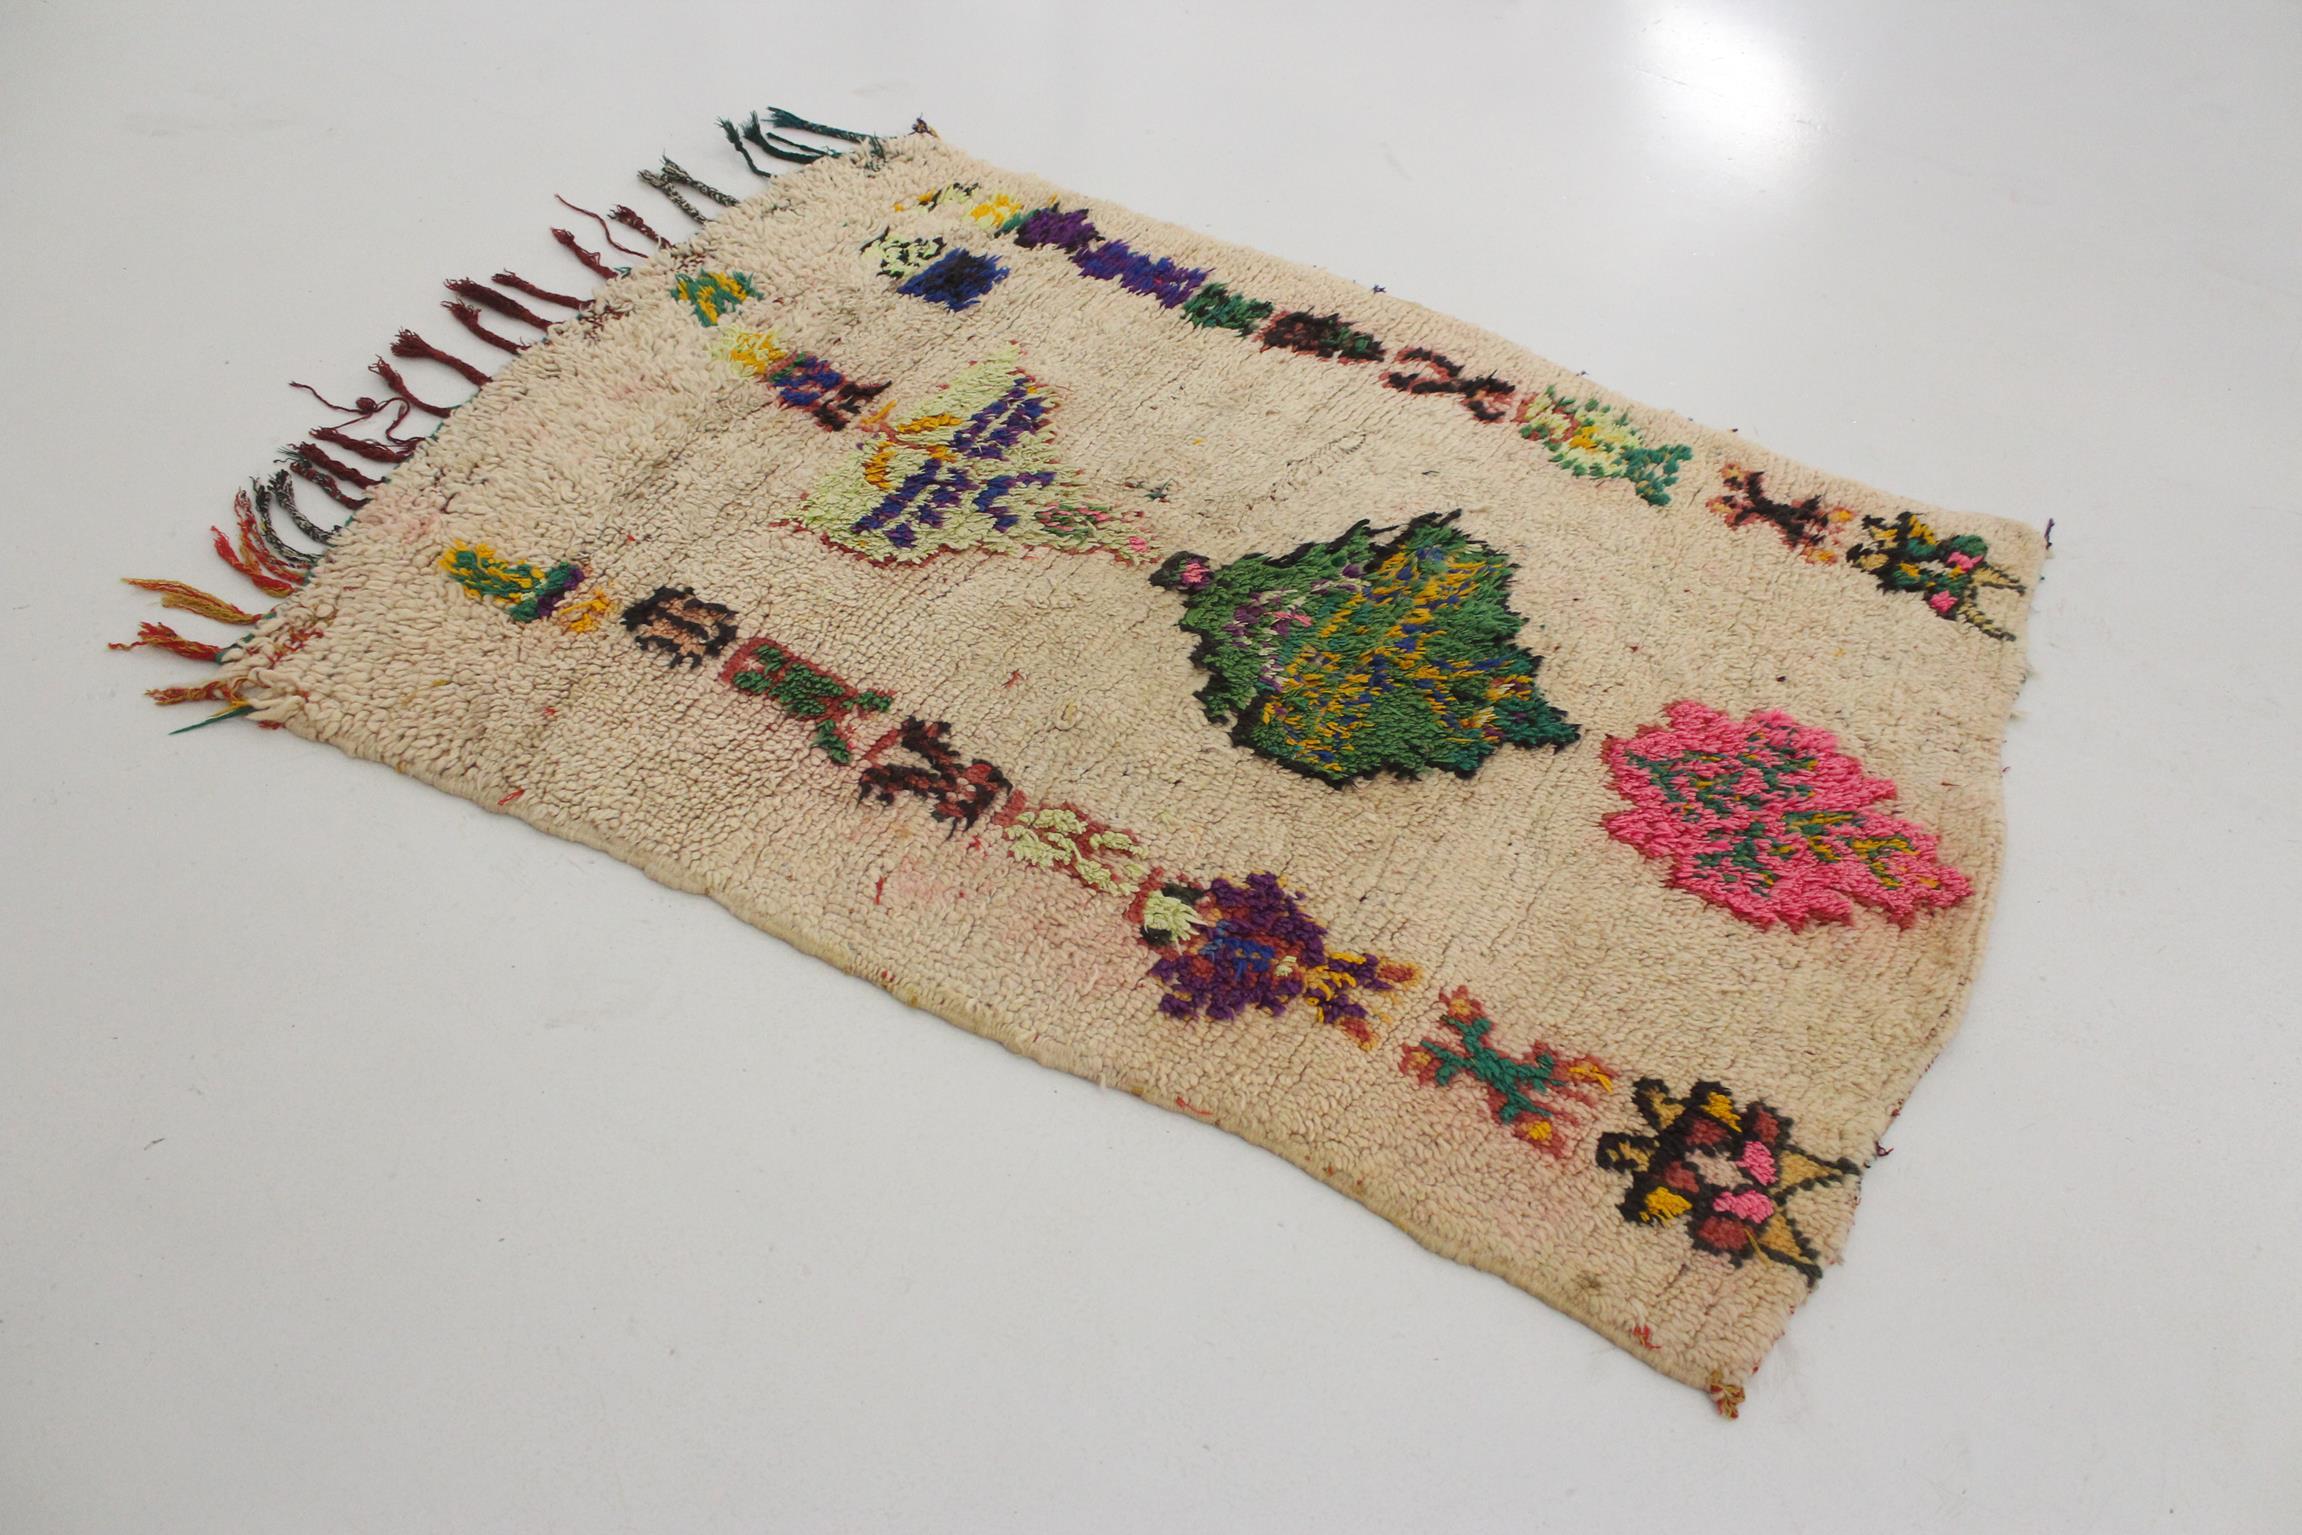 Ich habe diesen schönen Teppich aus einem Stapel von Teppichen ausgewählt, da ich schon immer einen kunstvollen Azilal-Teppich mit traditionellen Berbermustern geliebt habe! Die Hintergrundfarbe dieses kleinen Teppichs ist ein Beige (eigentlich die